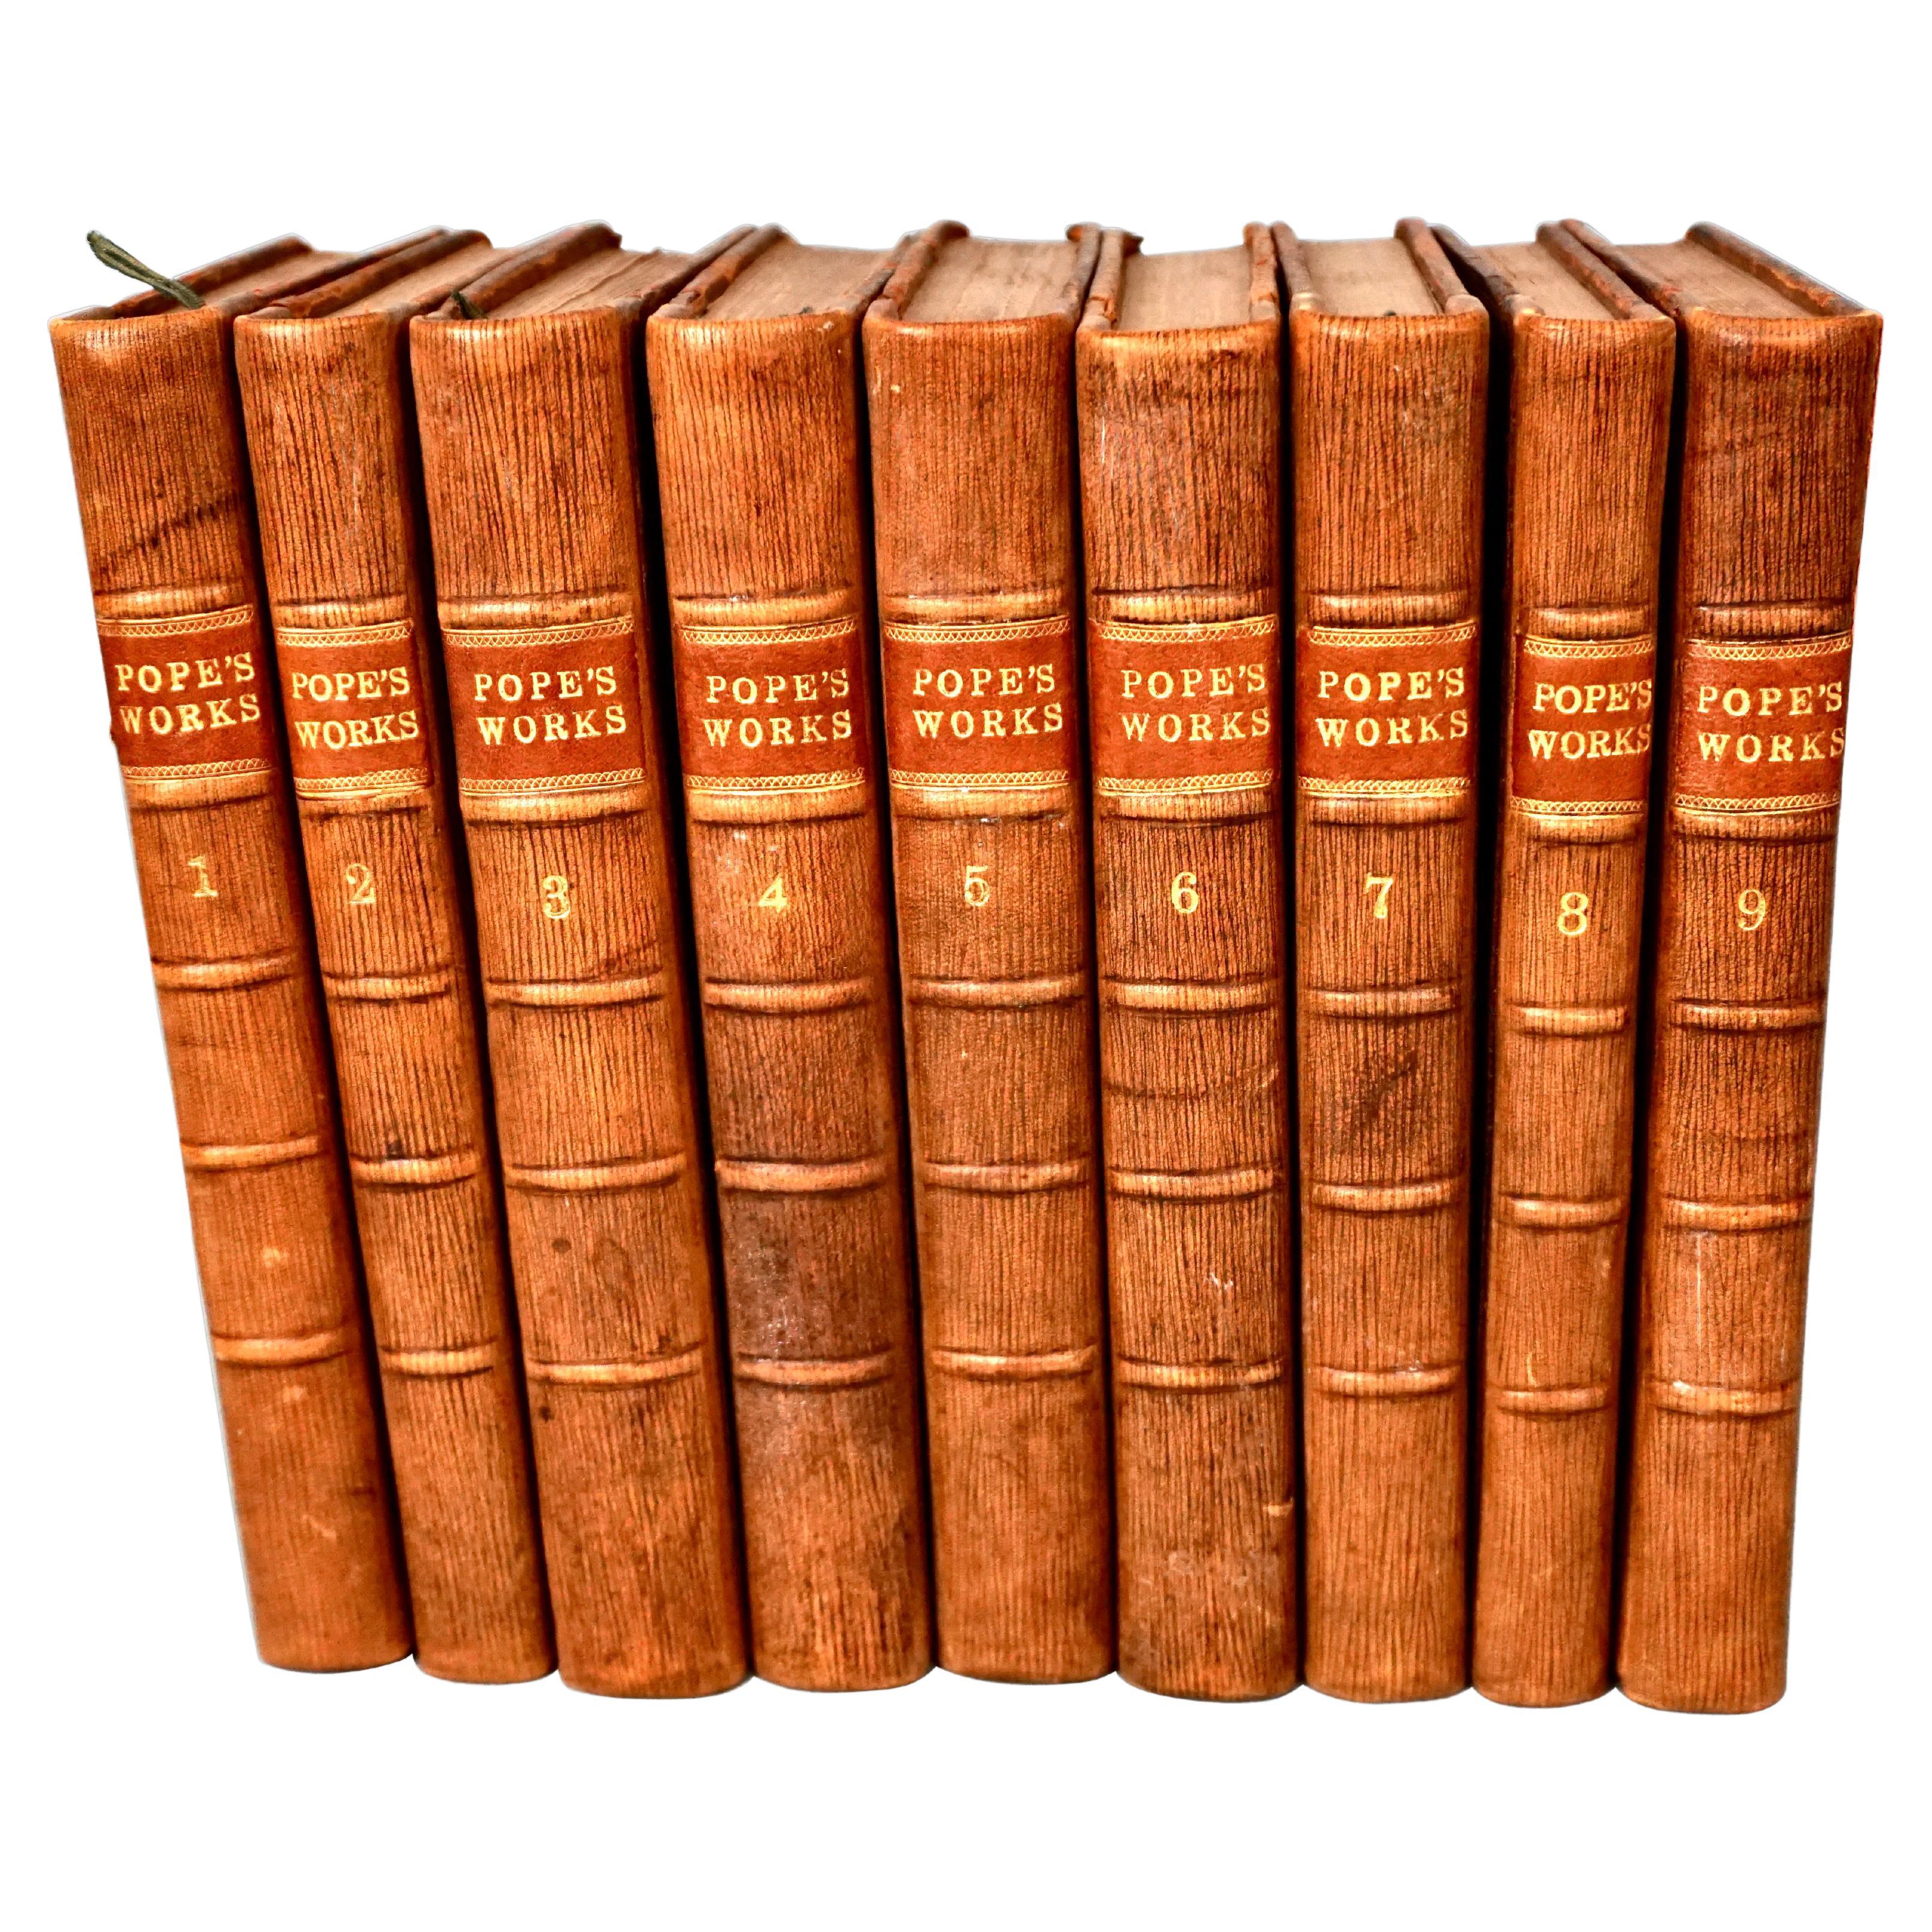 Œuvres d'Alexander Pope reliées en 9 volumes publiées en 1757